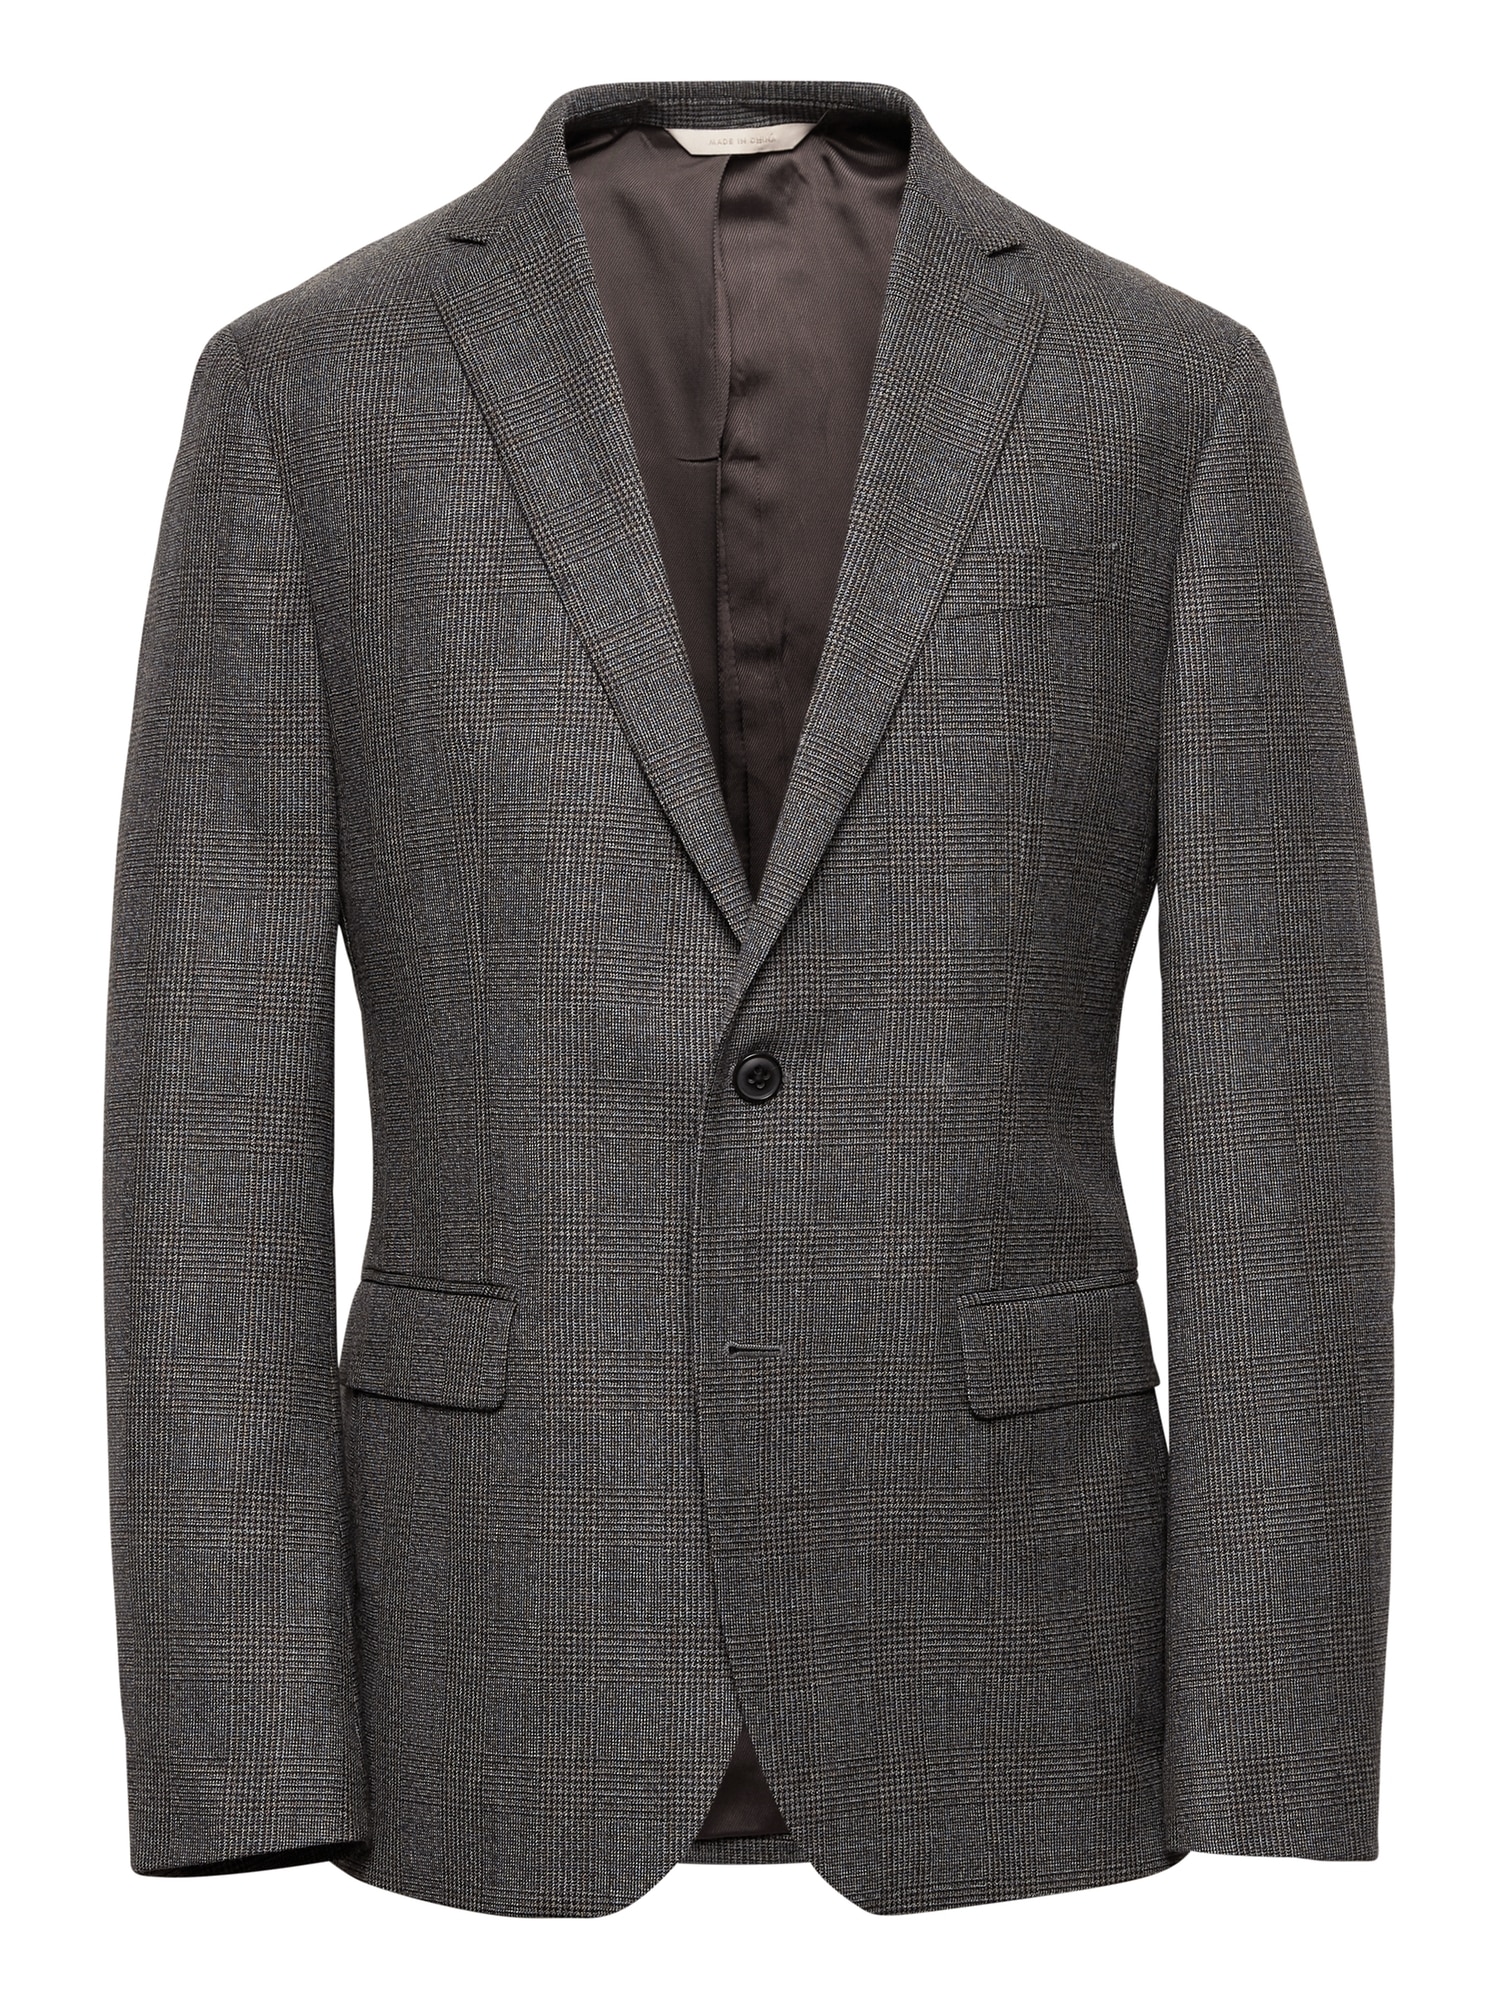 Heritage Slim Plaid Wool Suit Jacket